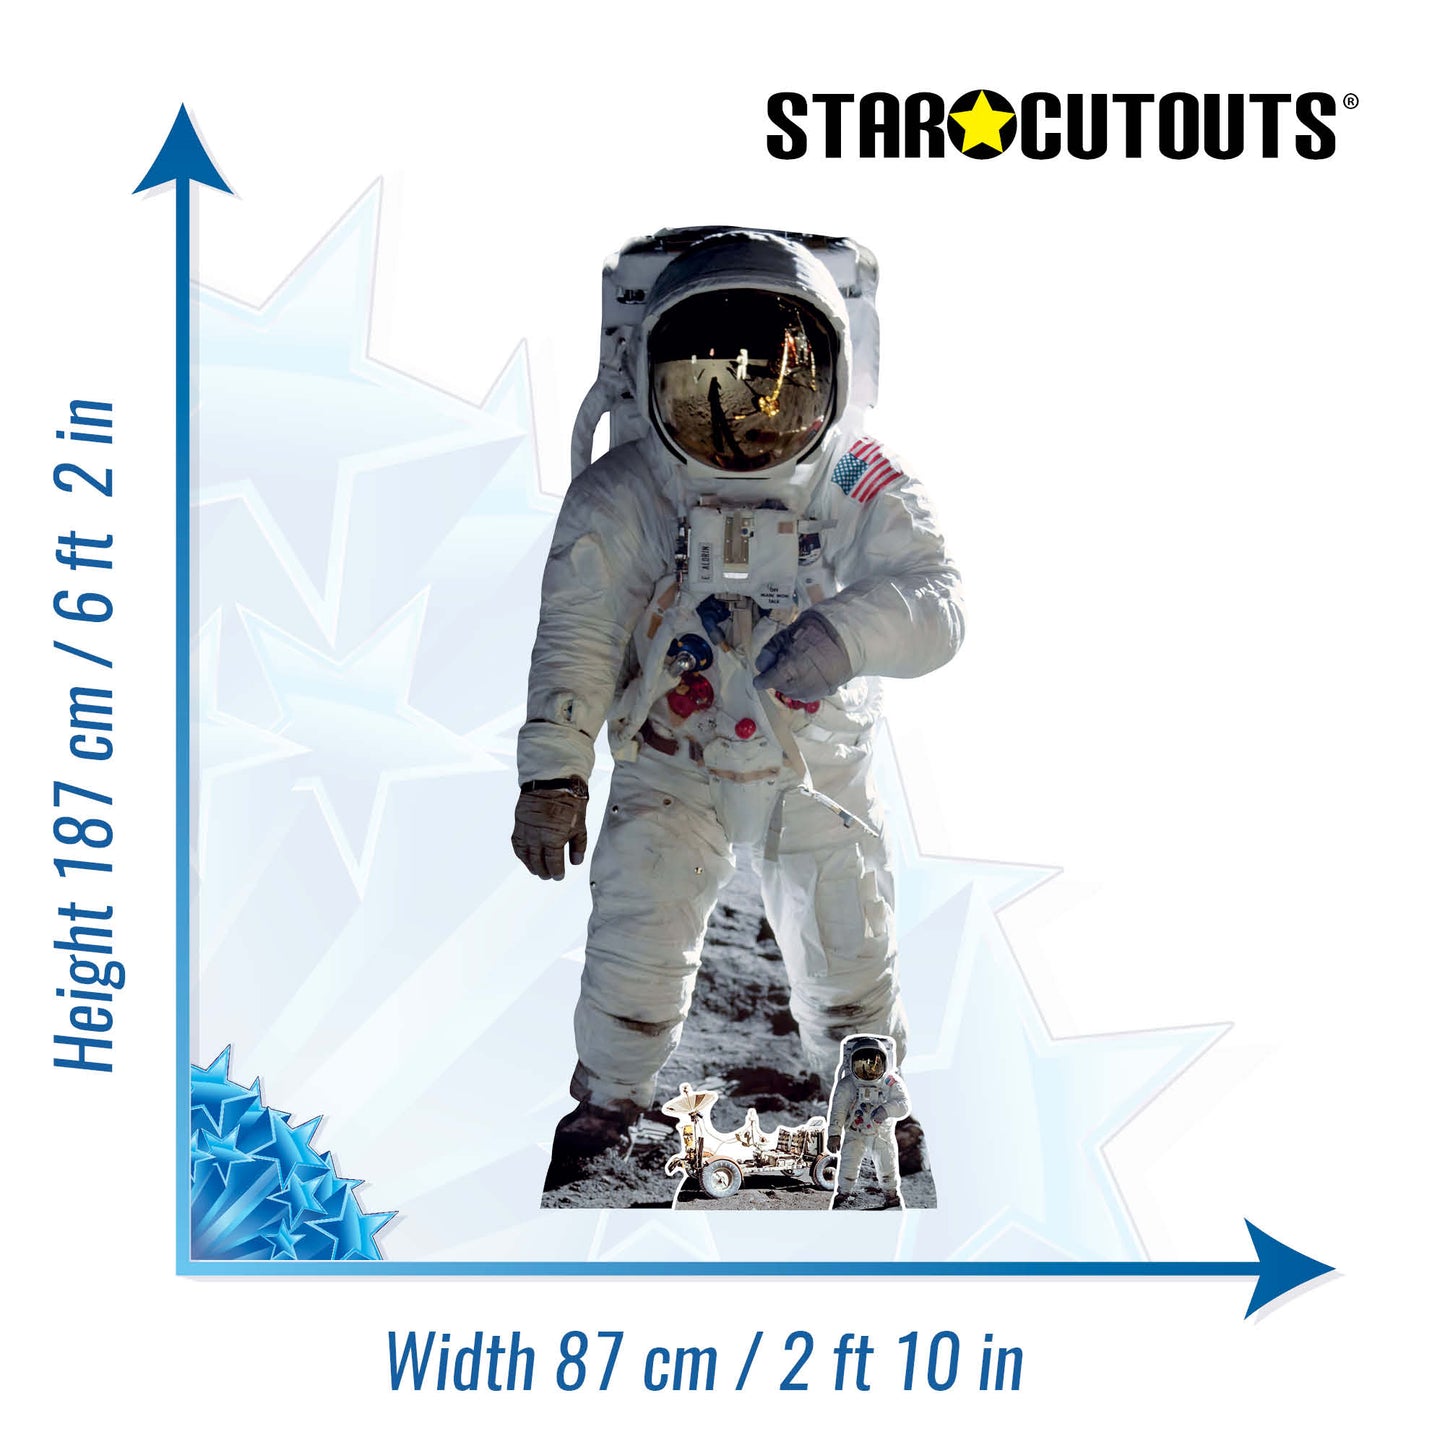 SC1695 Buzz Aldrin Astronaut Moonshot Cardboard Cut Out Height 187cm